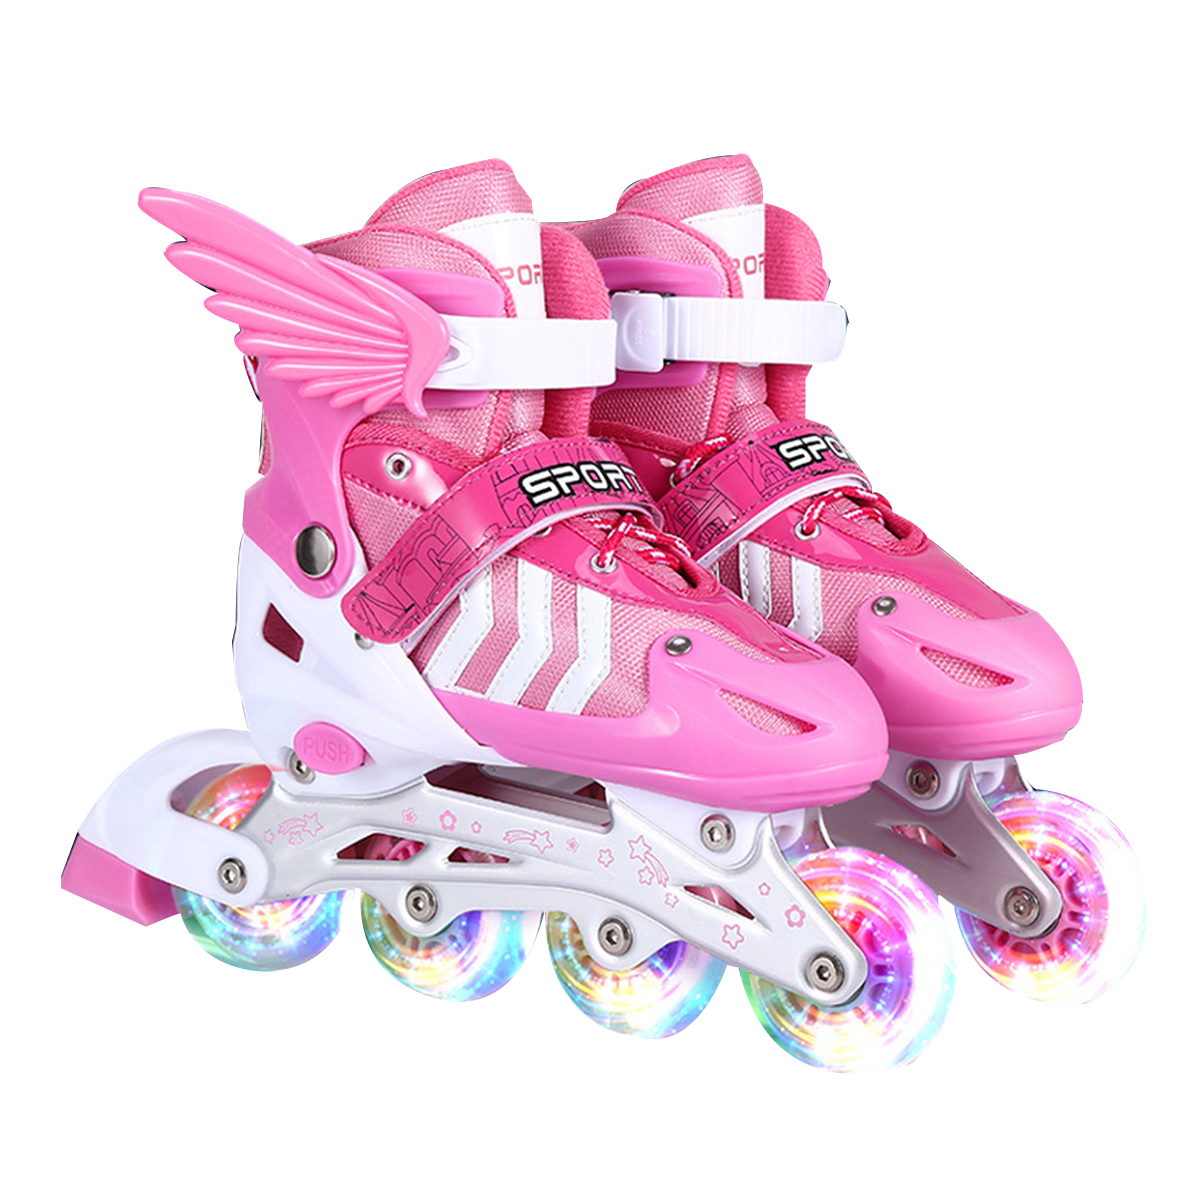 SML-Inline-Skates-with-4-LED-PVC-Skate-Wheels--Entry-level-Kid-Women-Men-Roller-Skates-Birthday-Gift-1808954-13